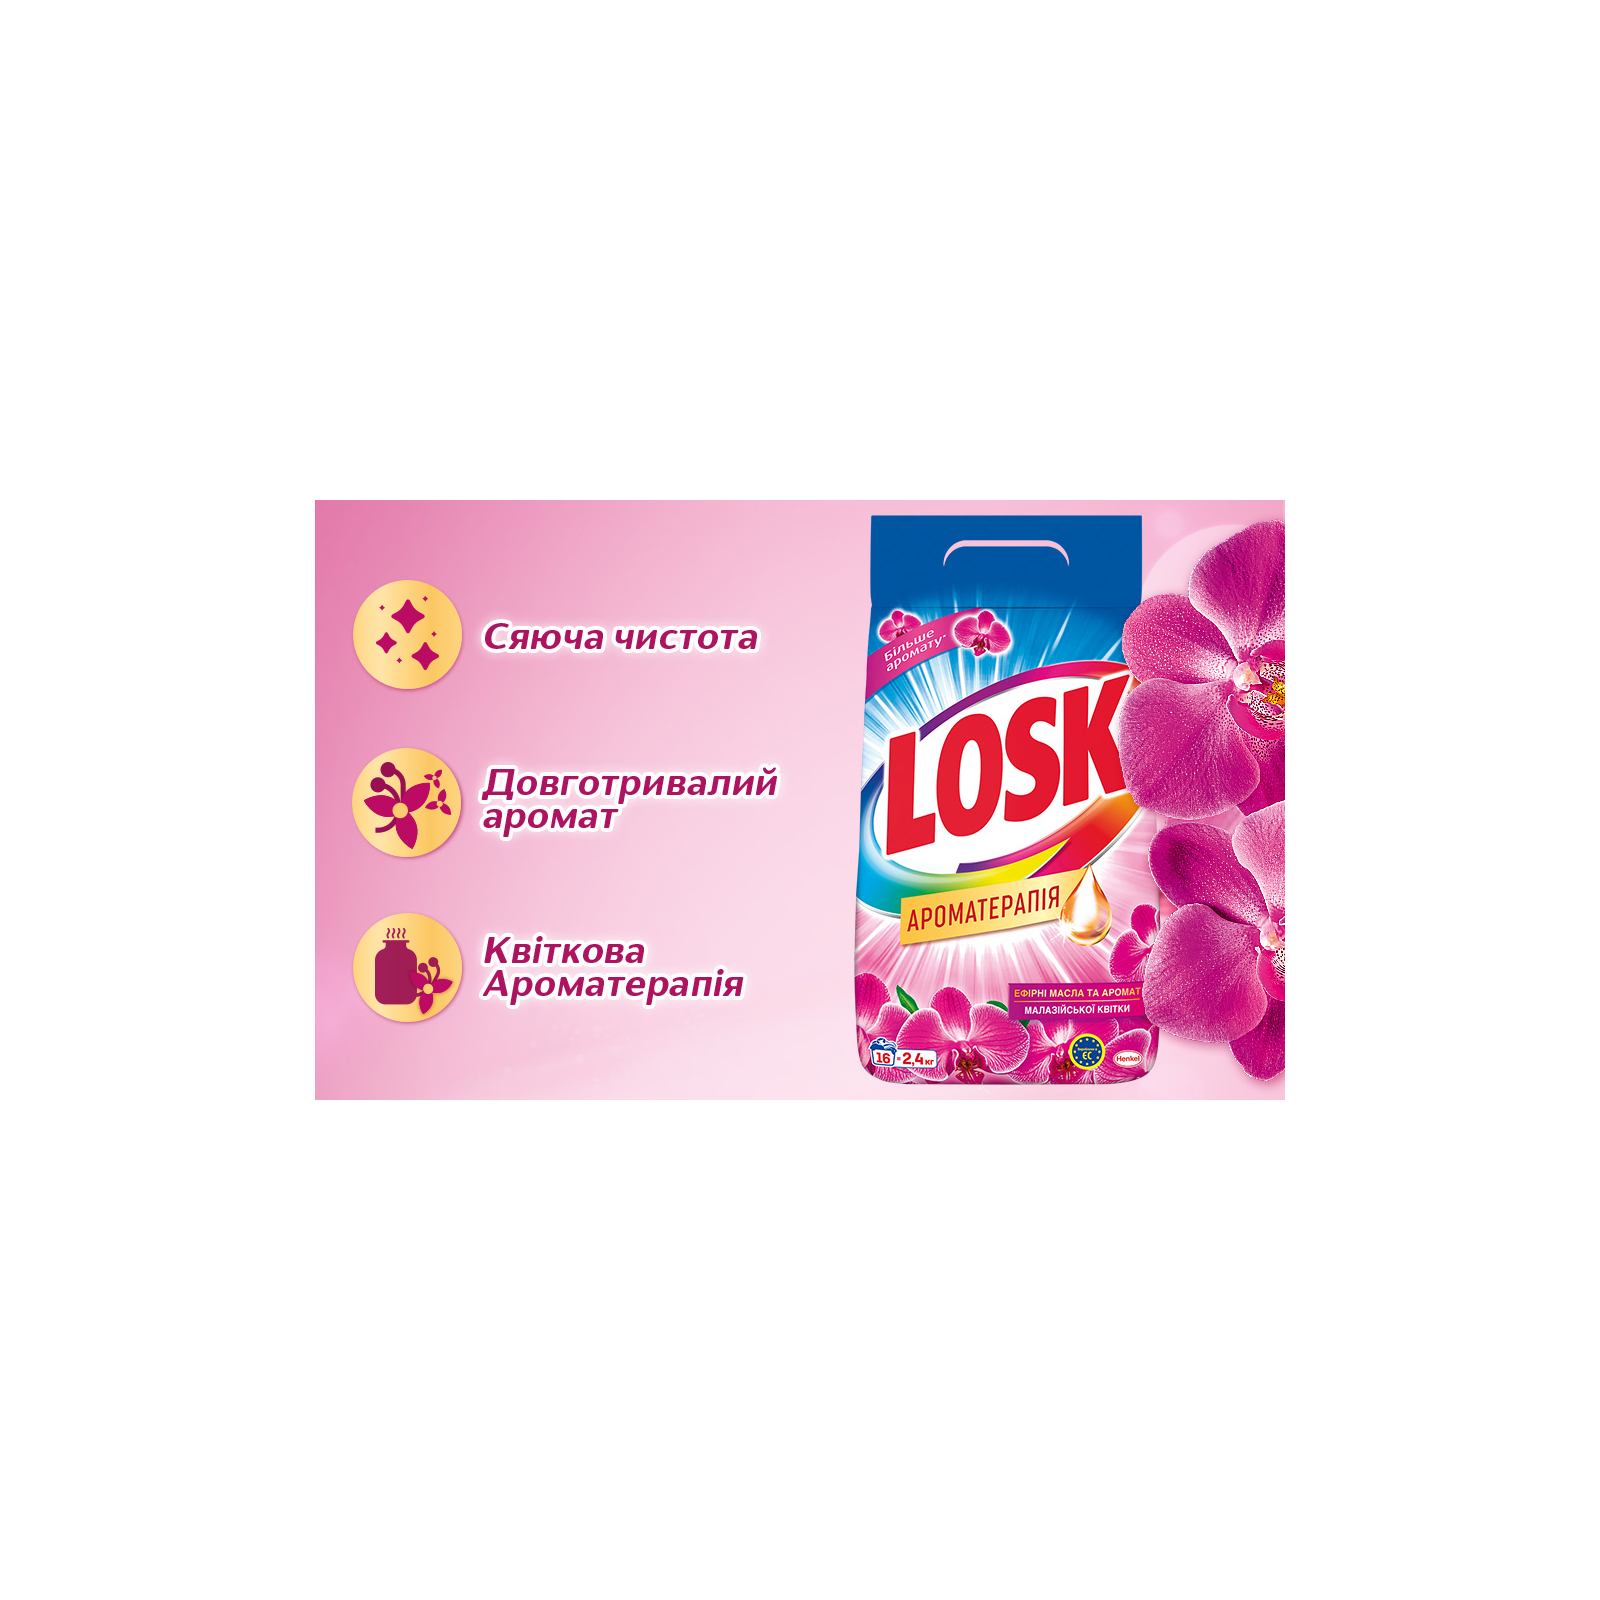 Стиральный порошок Losk автомат аромат Малайзийских цветов 400гр (9000101413441) изображение 2